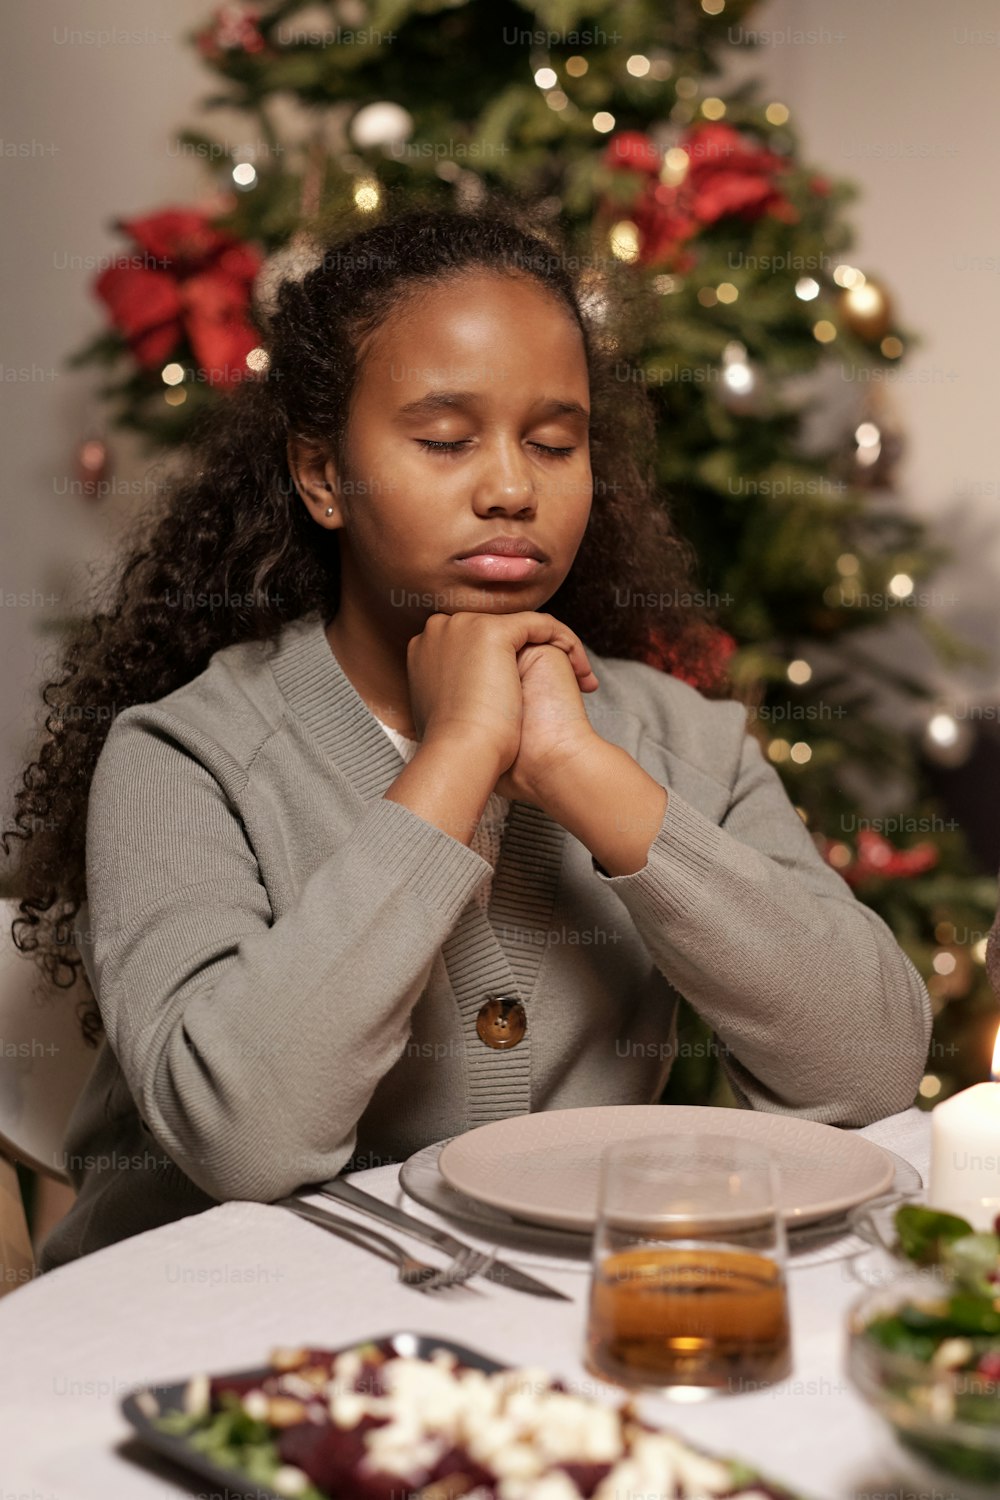 눈을 감고 턱으로 손을 모은 귀여운 혼혈 소녀가 축제 저녁 식사를 위해 준비된 테이블 옆에서 기도하고 있다